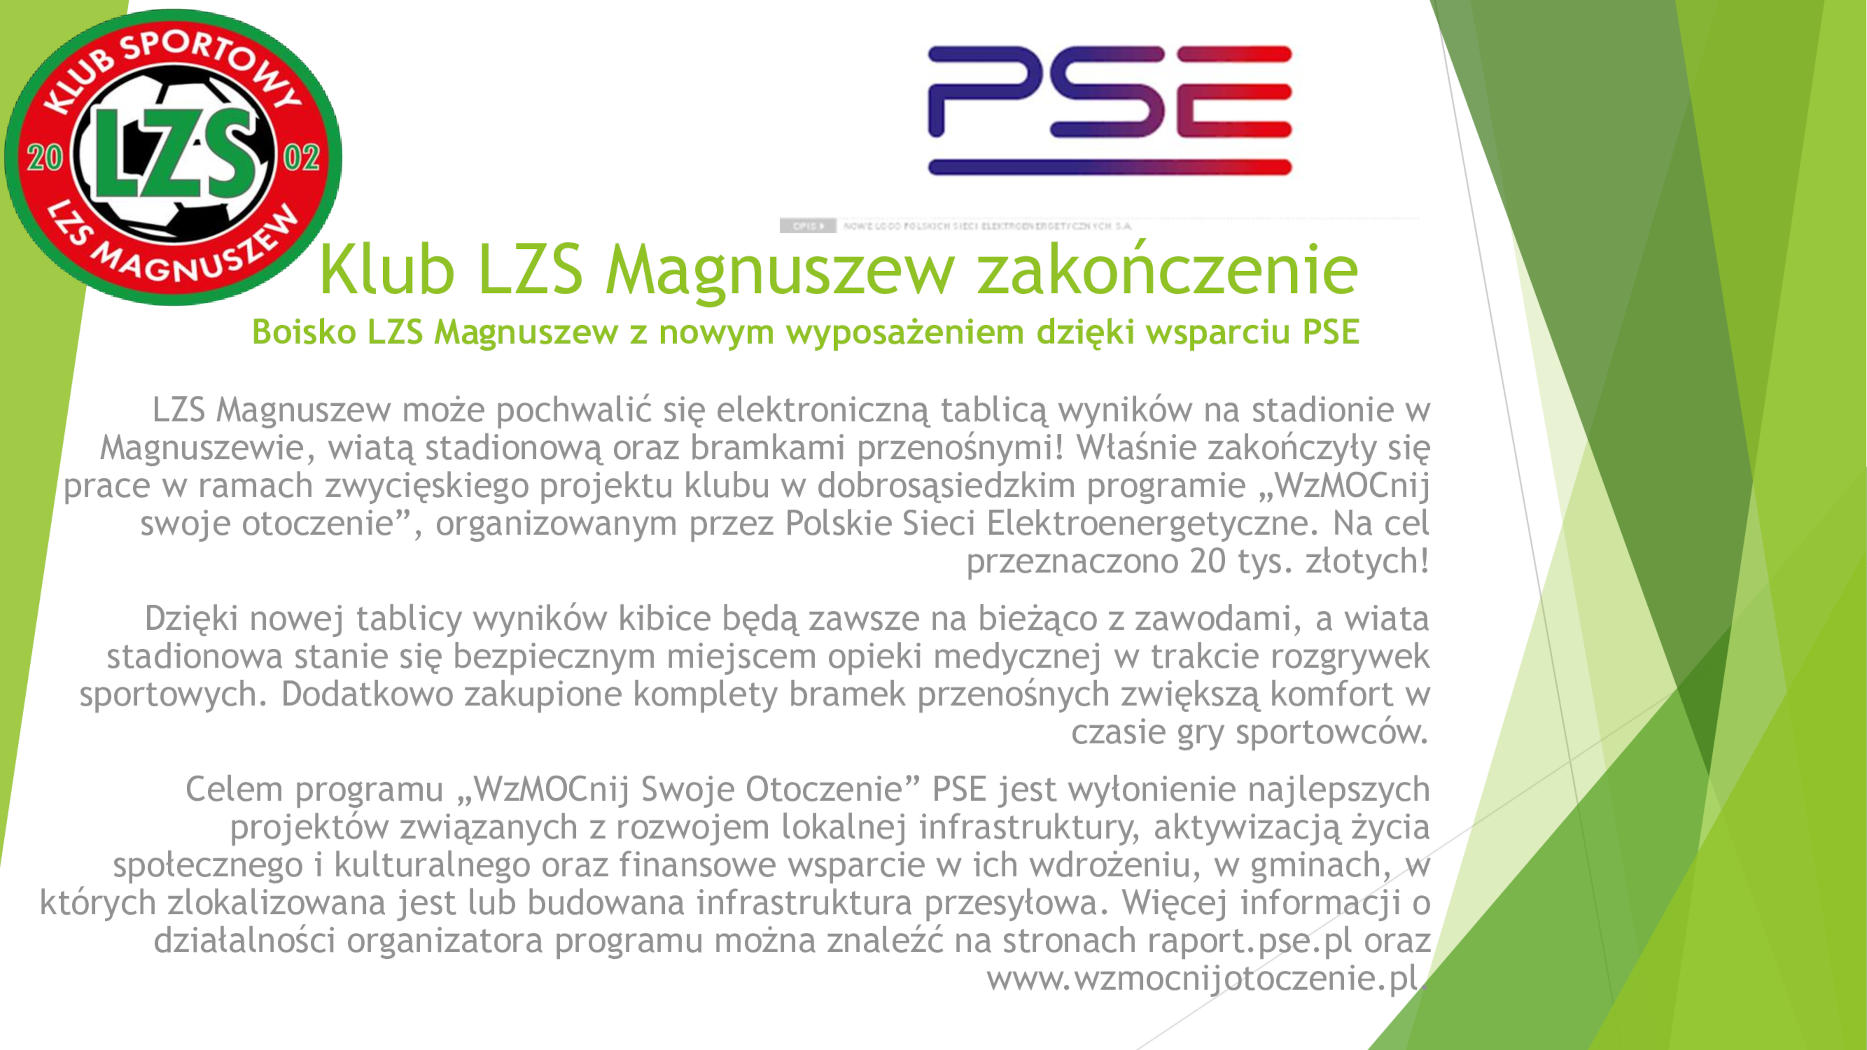 Klub LZS Magnuszew zakończenie PSE